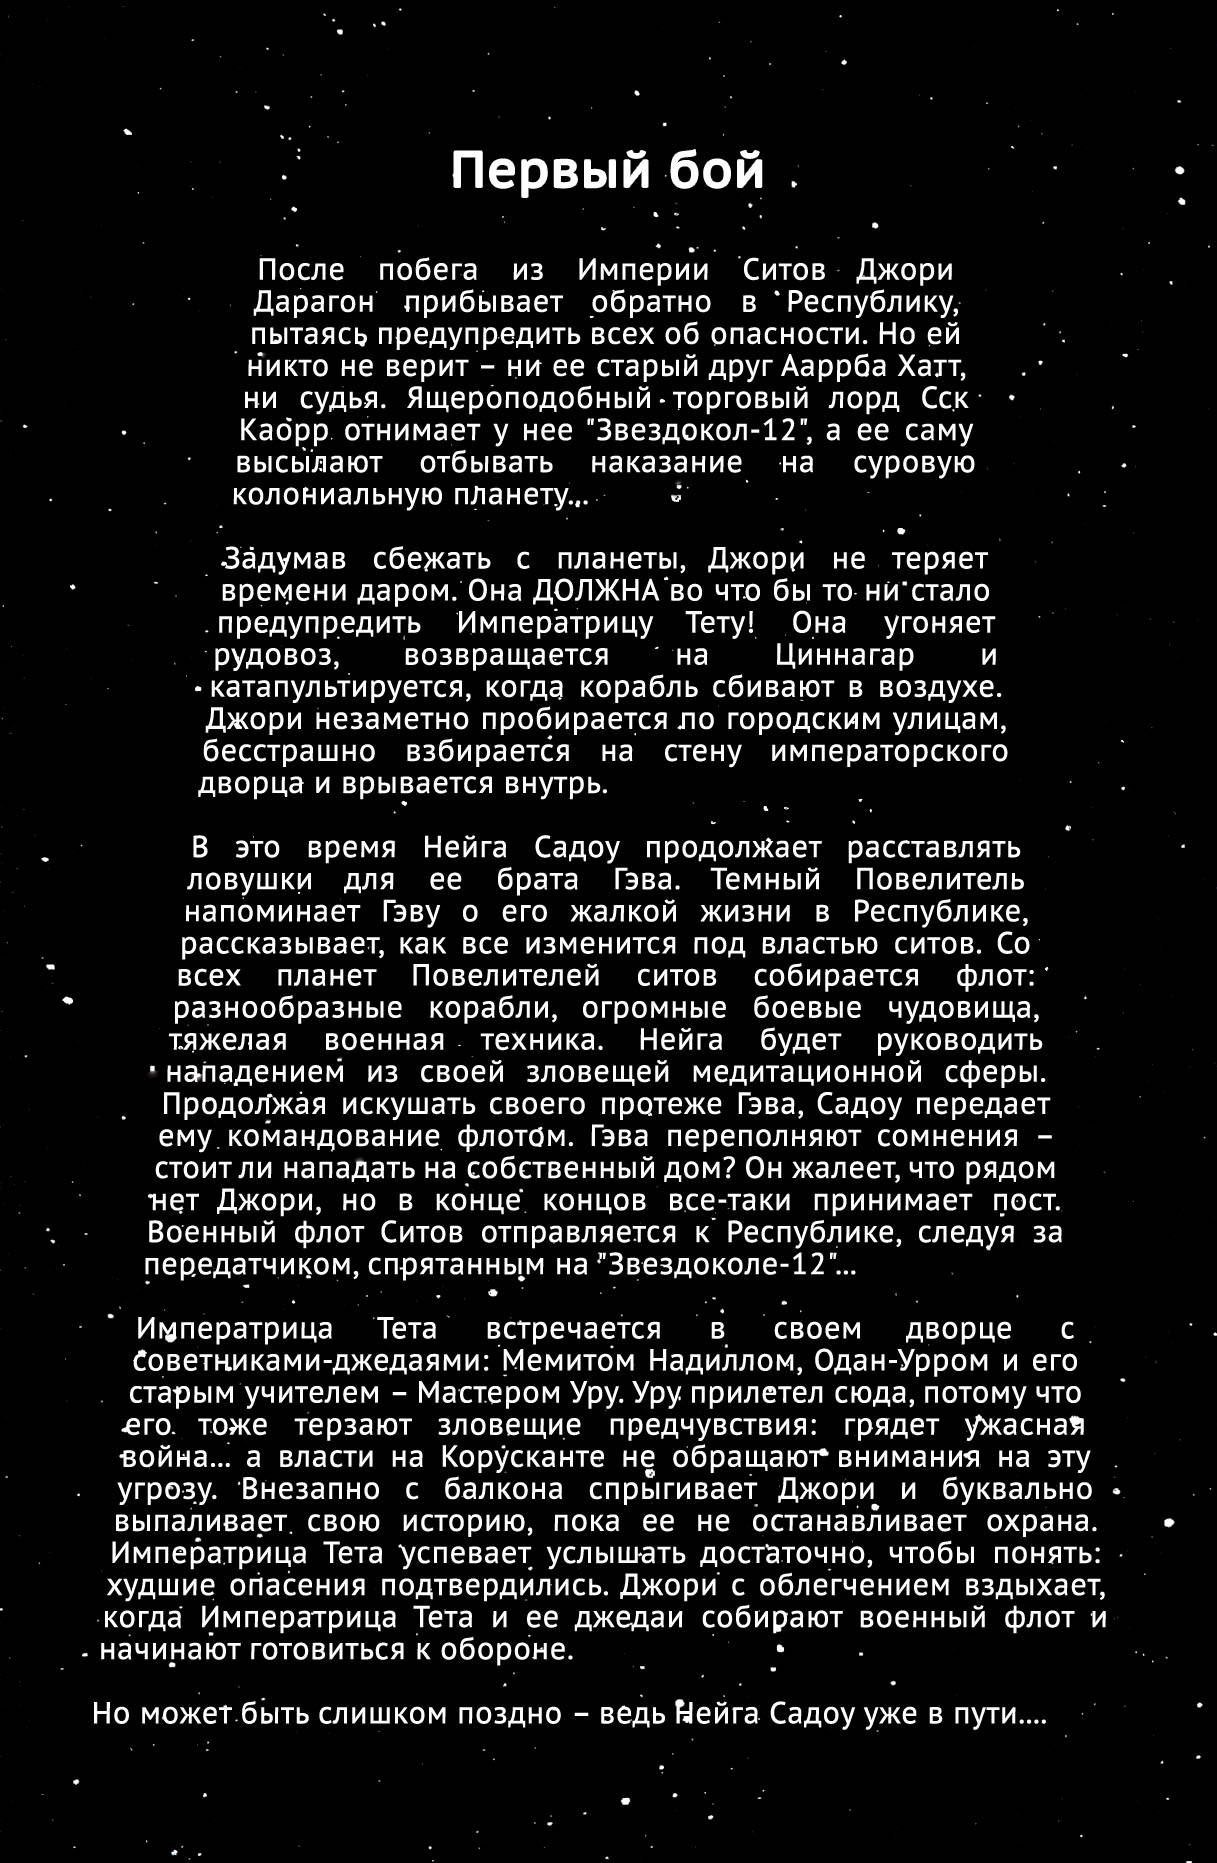 Звездные Войны: Сказания о Джедаях: Крах Империи Ситов №3 онлайн